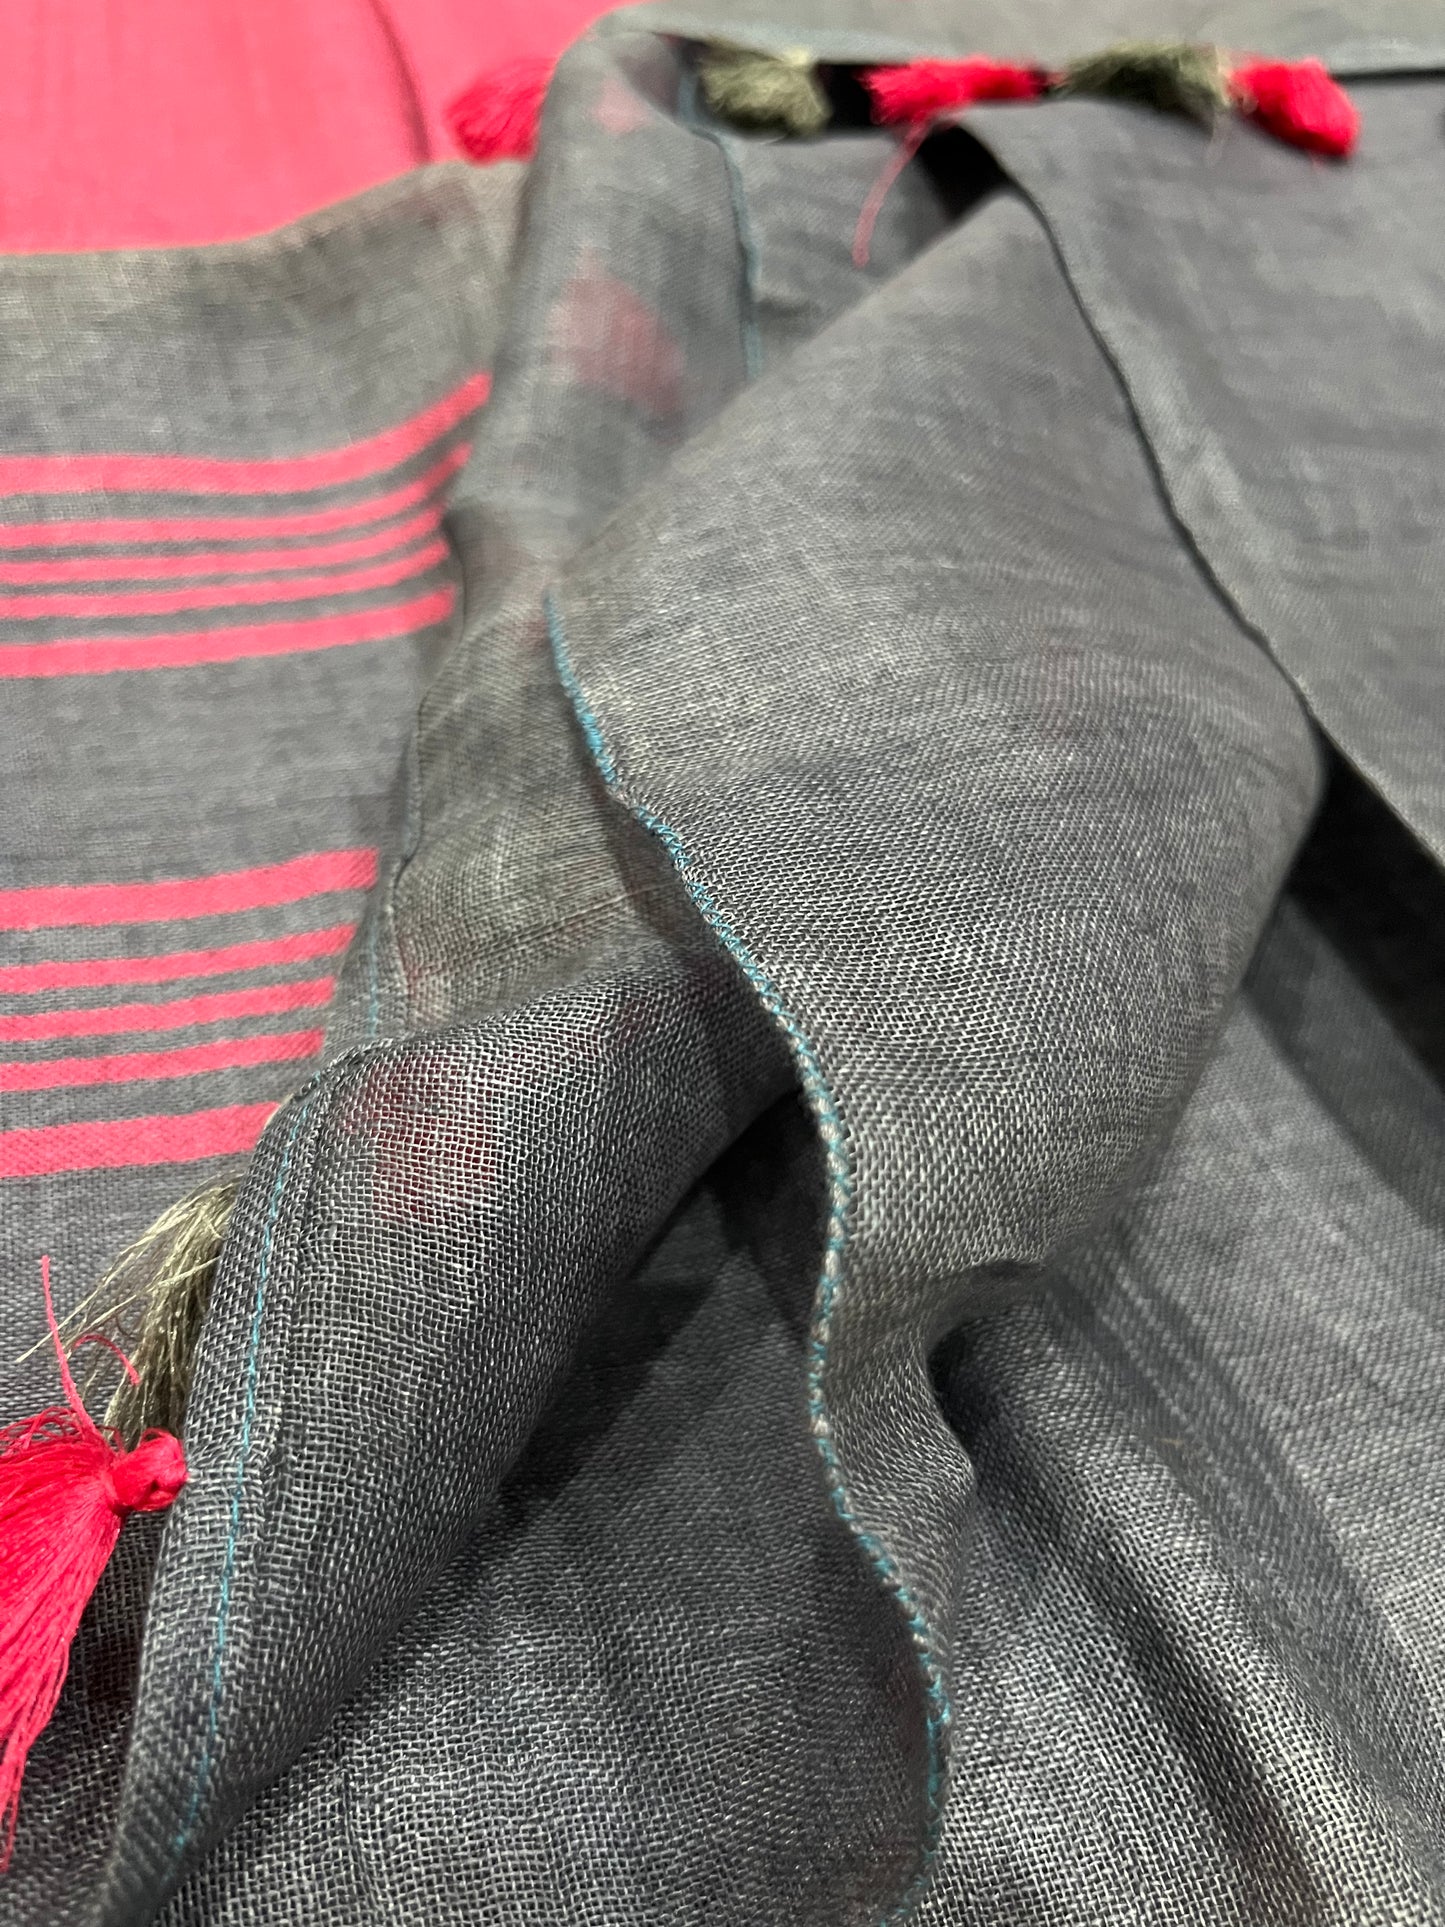 Grey shade Handwoven organic Linen Saree | Silver Zari border| Pink Kanni| Pink Contrast blouse | KIHUMS Saree